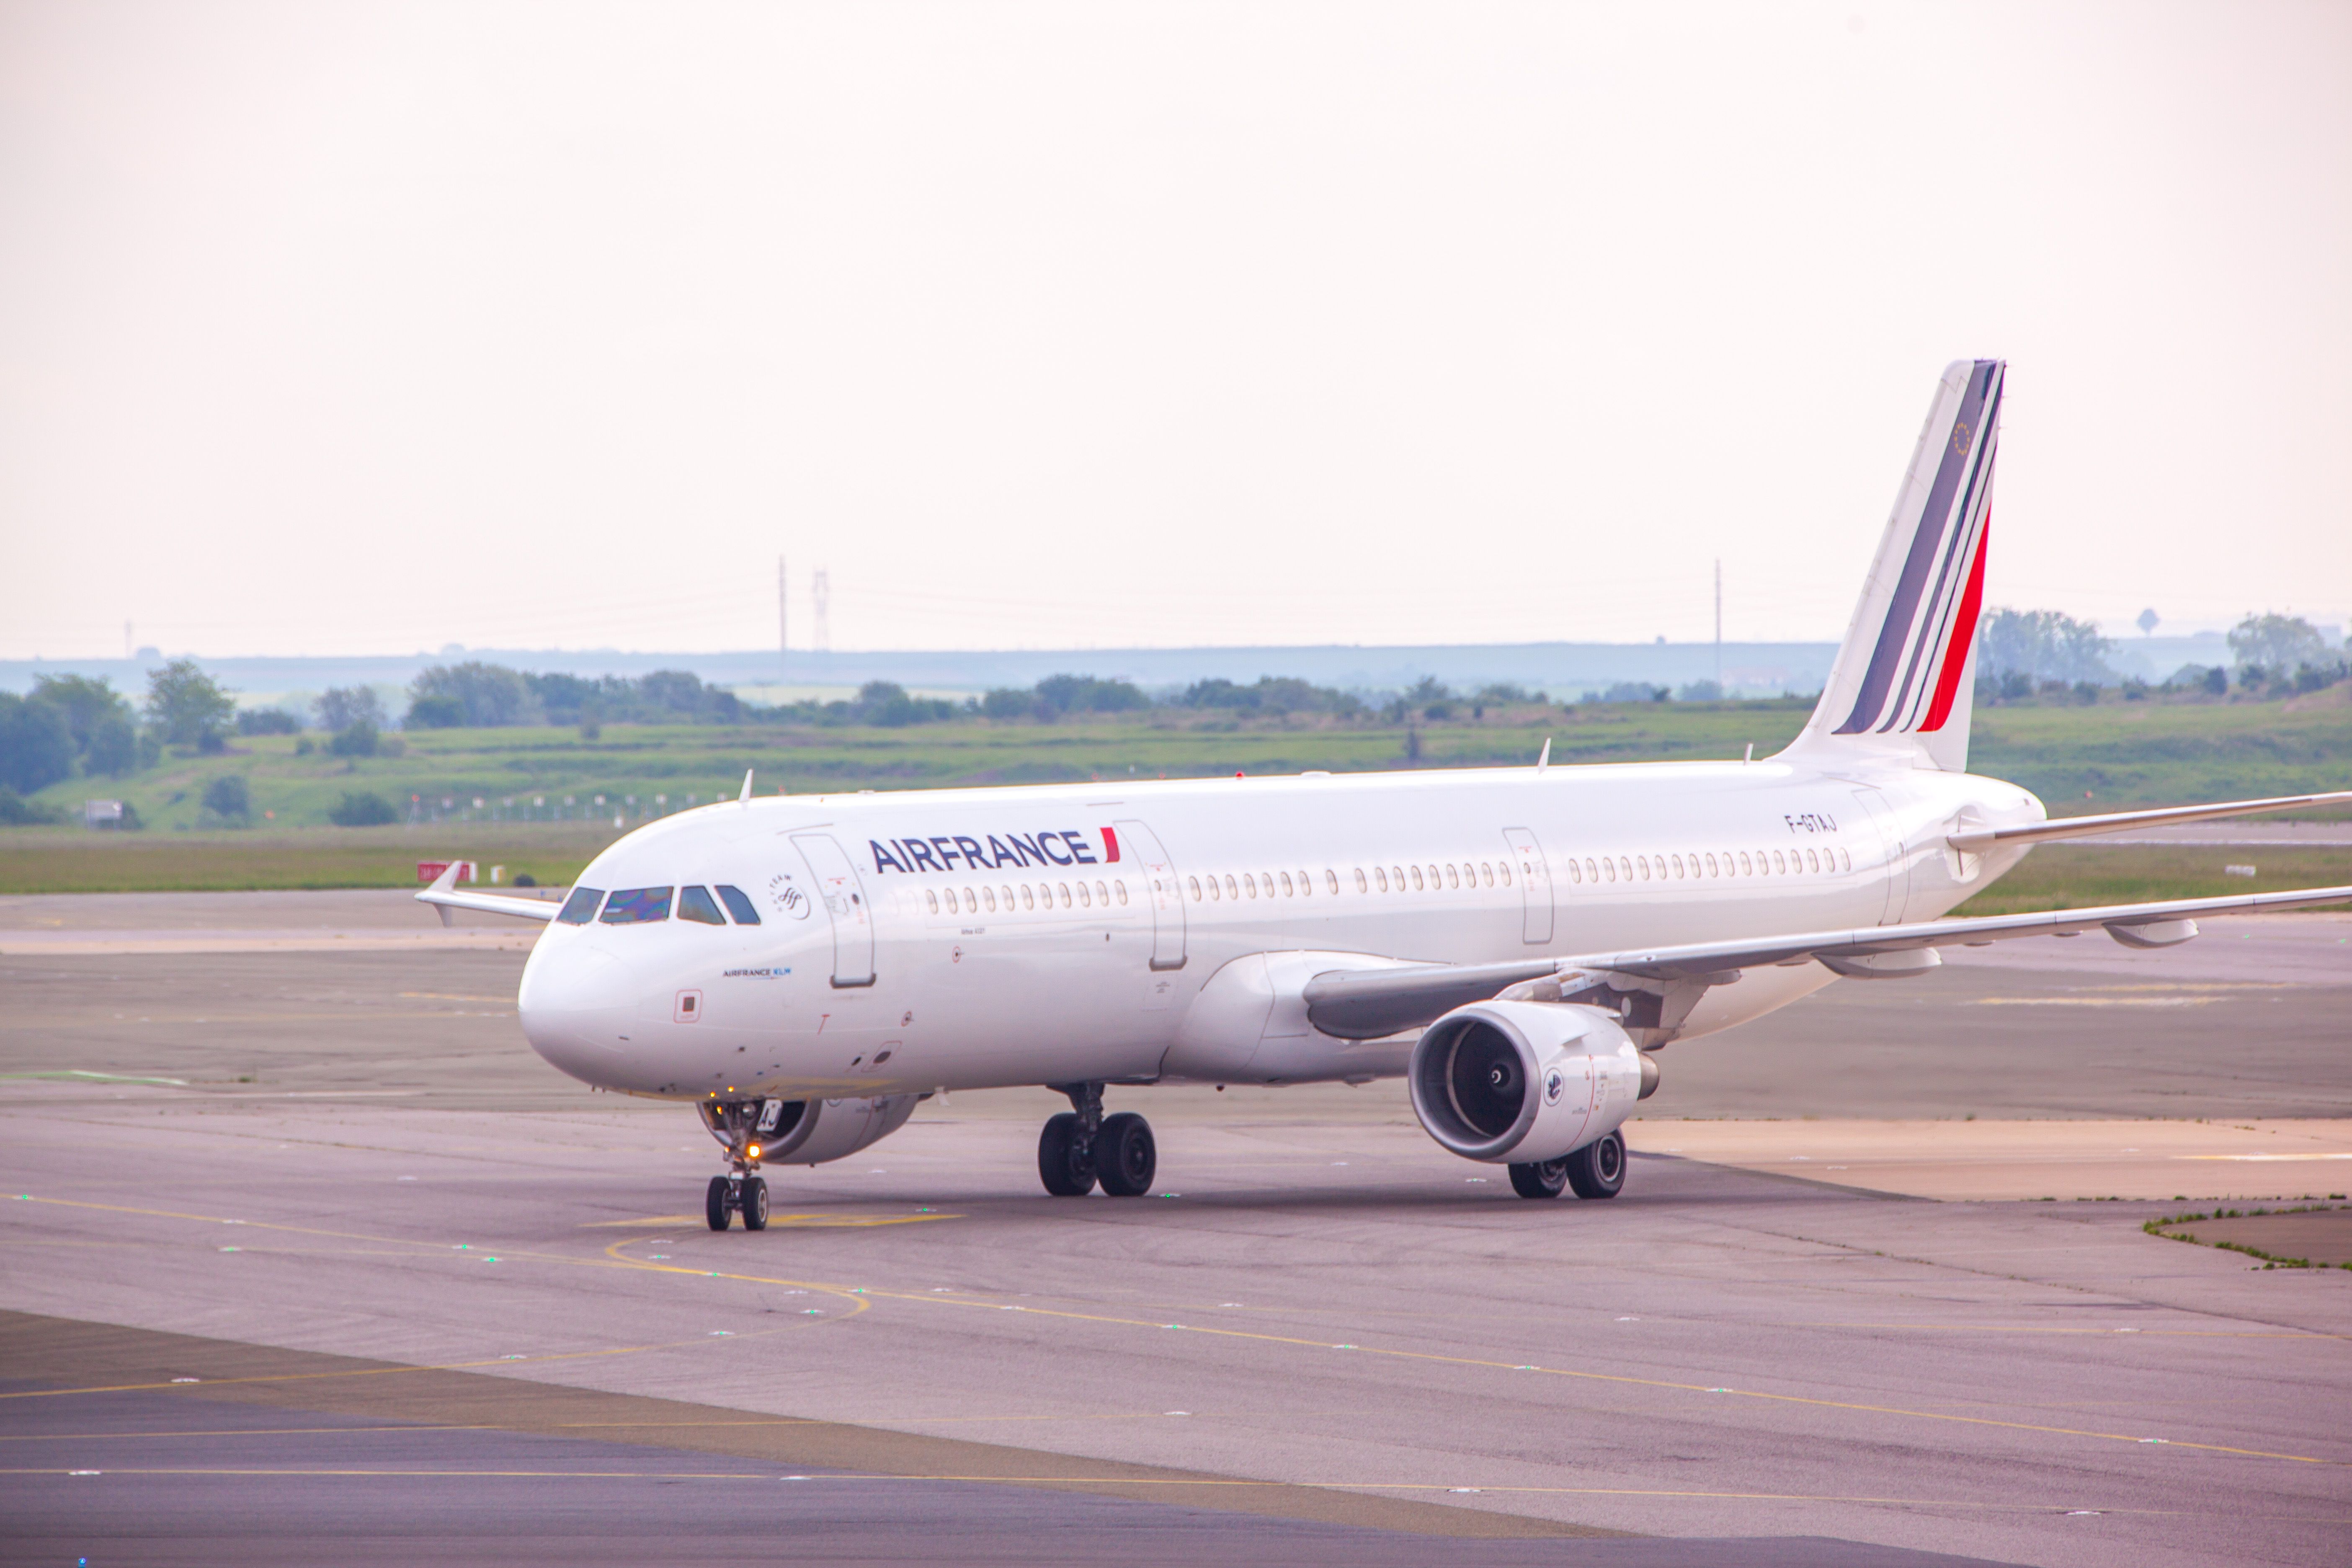 An Air France Airbus A321